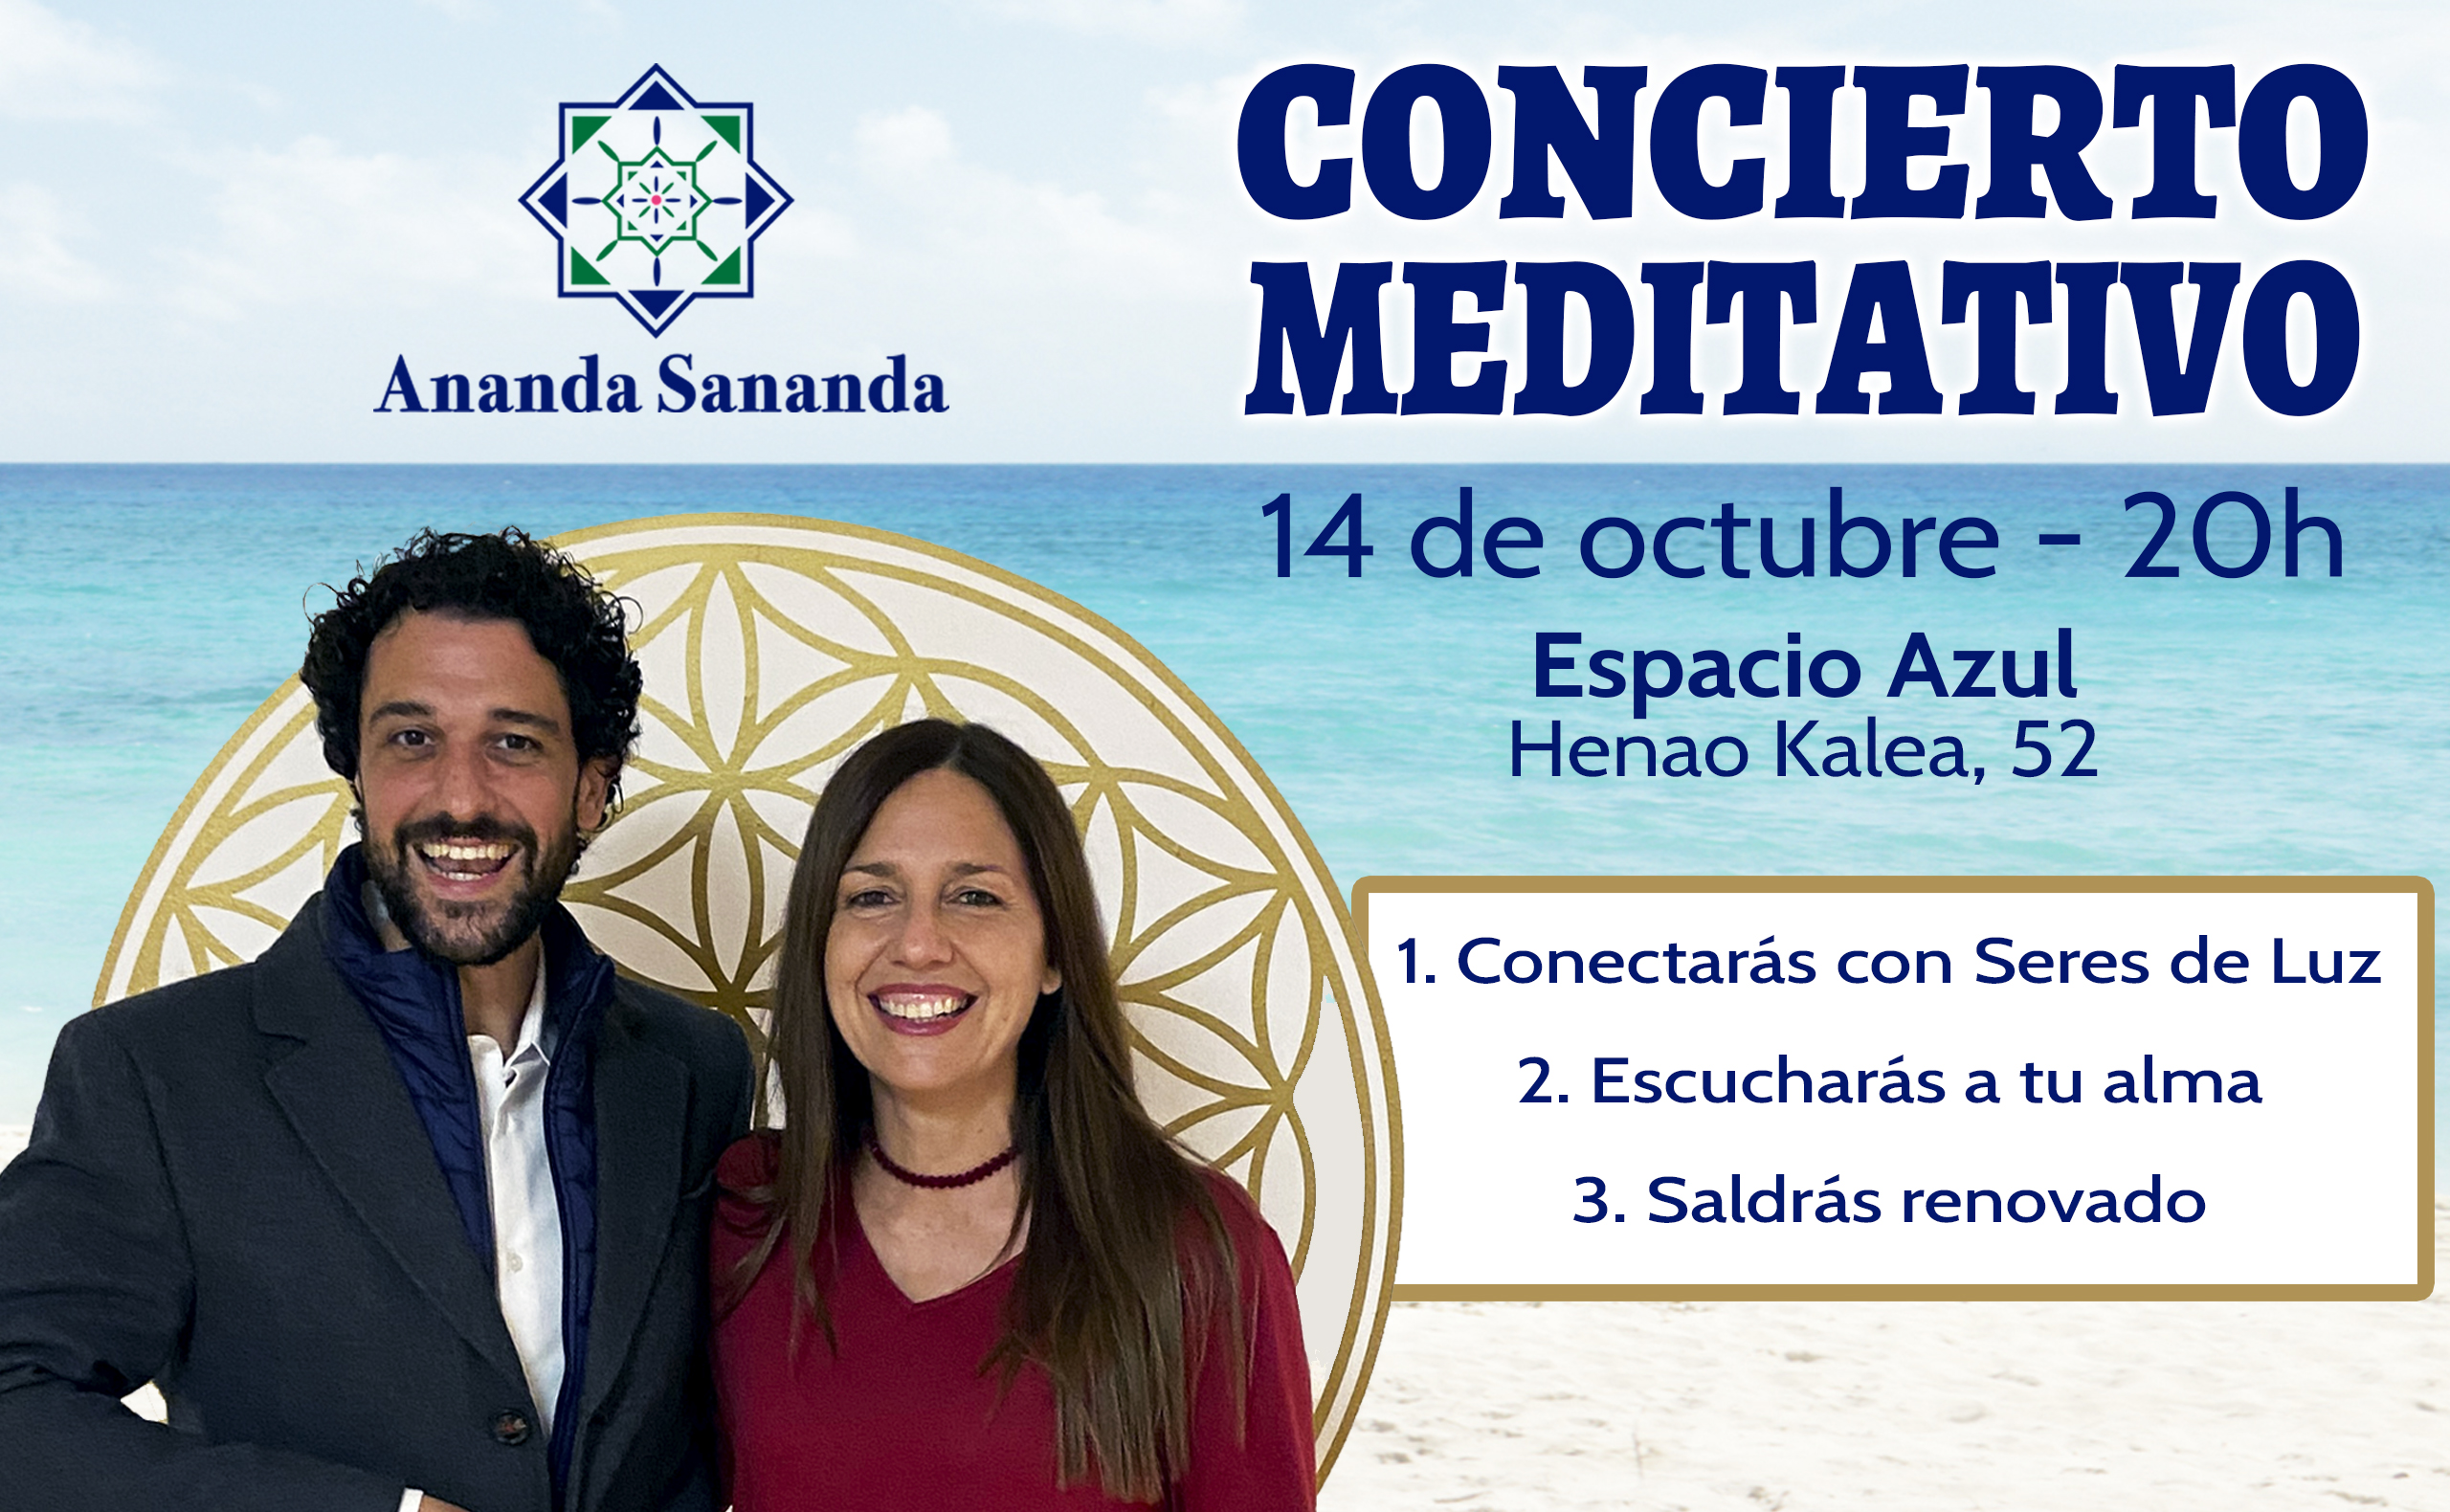 Concierto Meditativo y Curso Aprender a Canalizar con Ananda Sananda